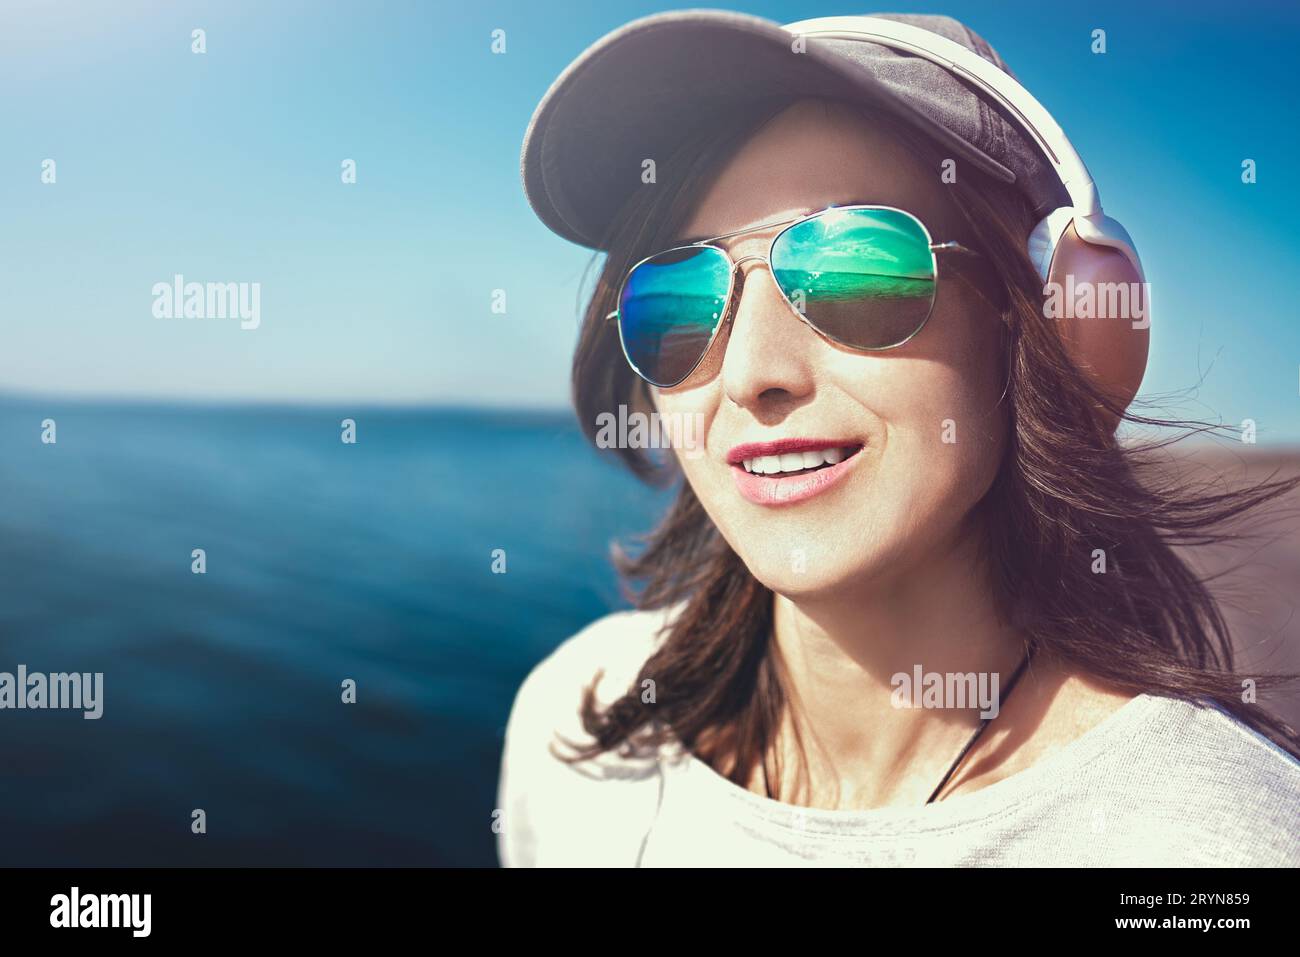 Nahporträt einer Frau in Sonnenbrille mit Mütze, die Musik im Hintergrund des Meeres genießt.Musikkonzept. Stockfoto